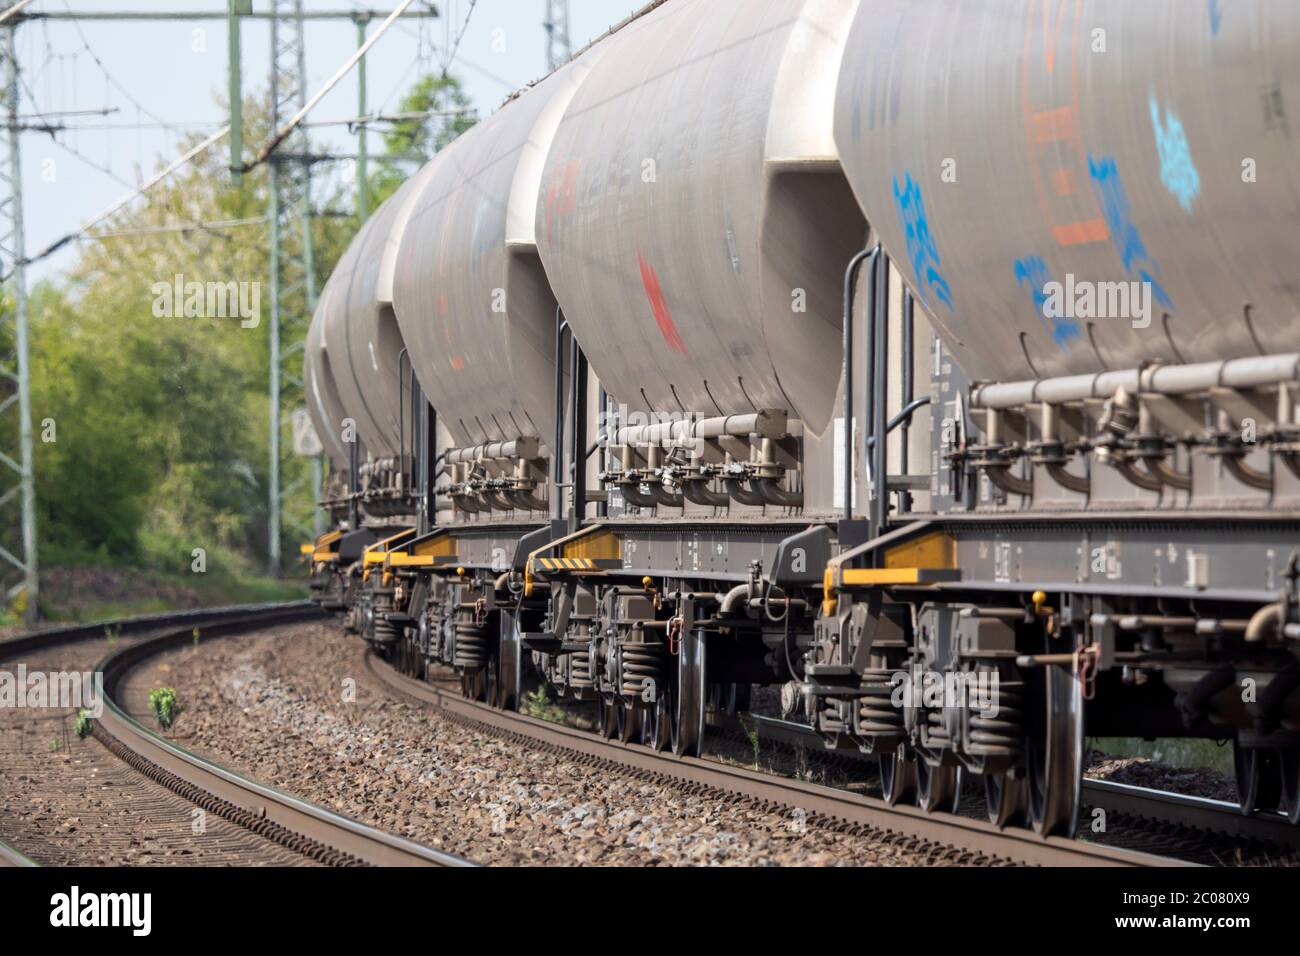 Schienengüterverkehr sichert die Versorgung in der Coronakrise. Köln, 16.04.2020 Foto Stock